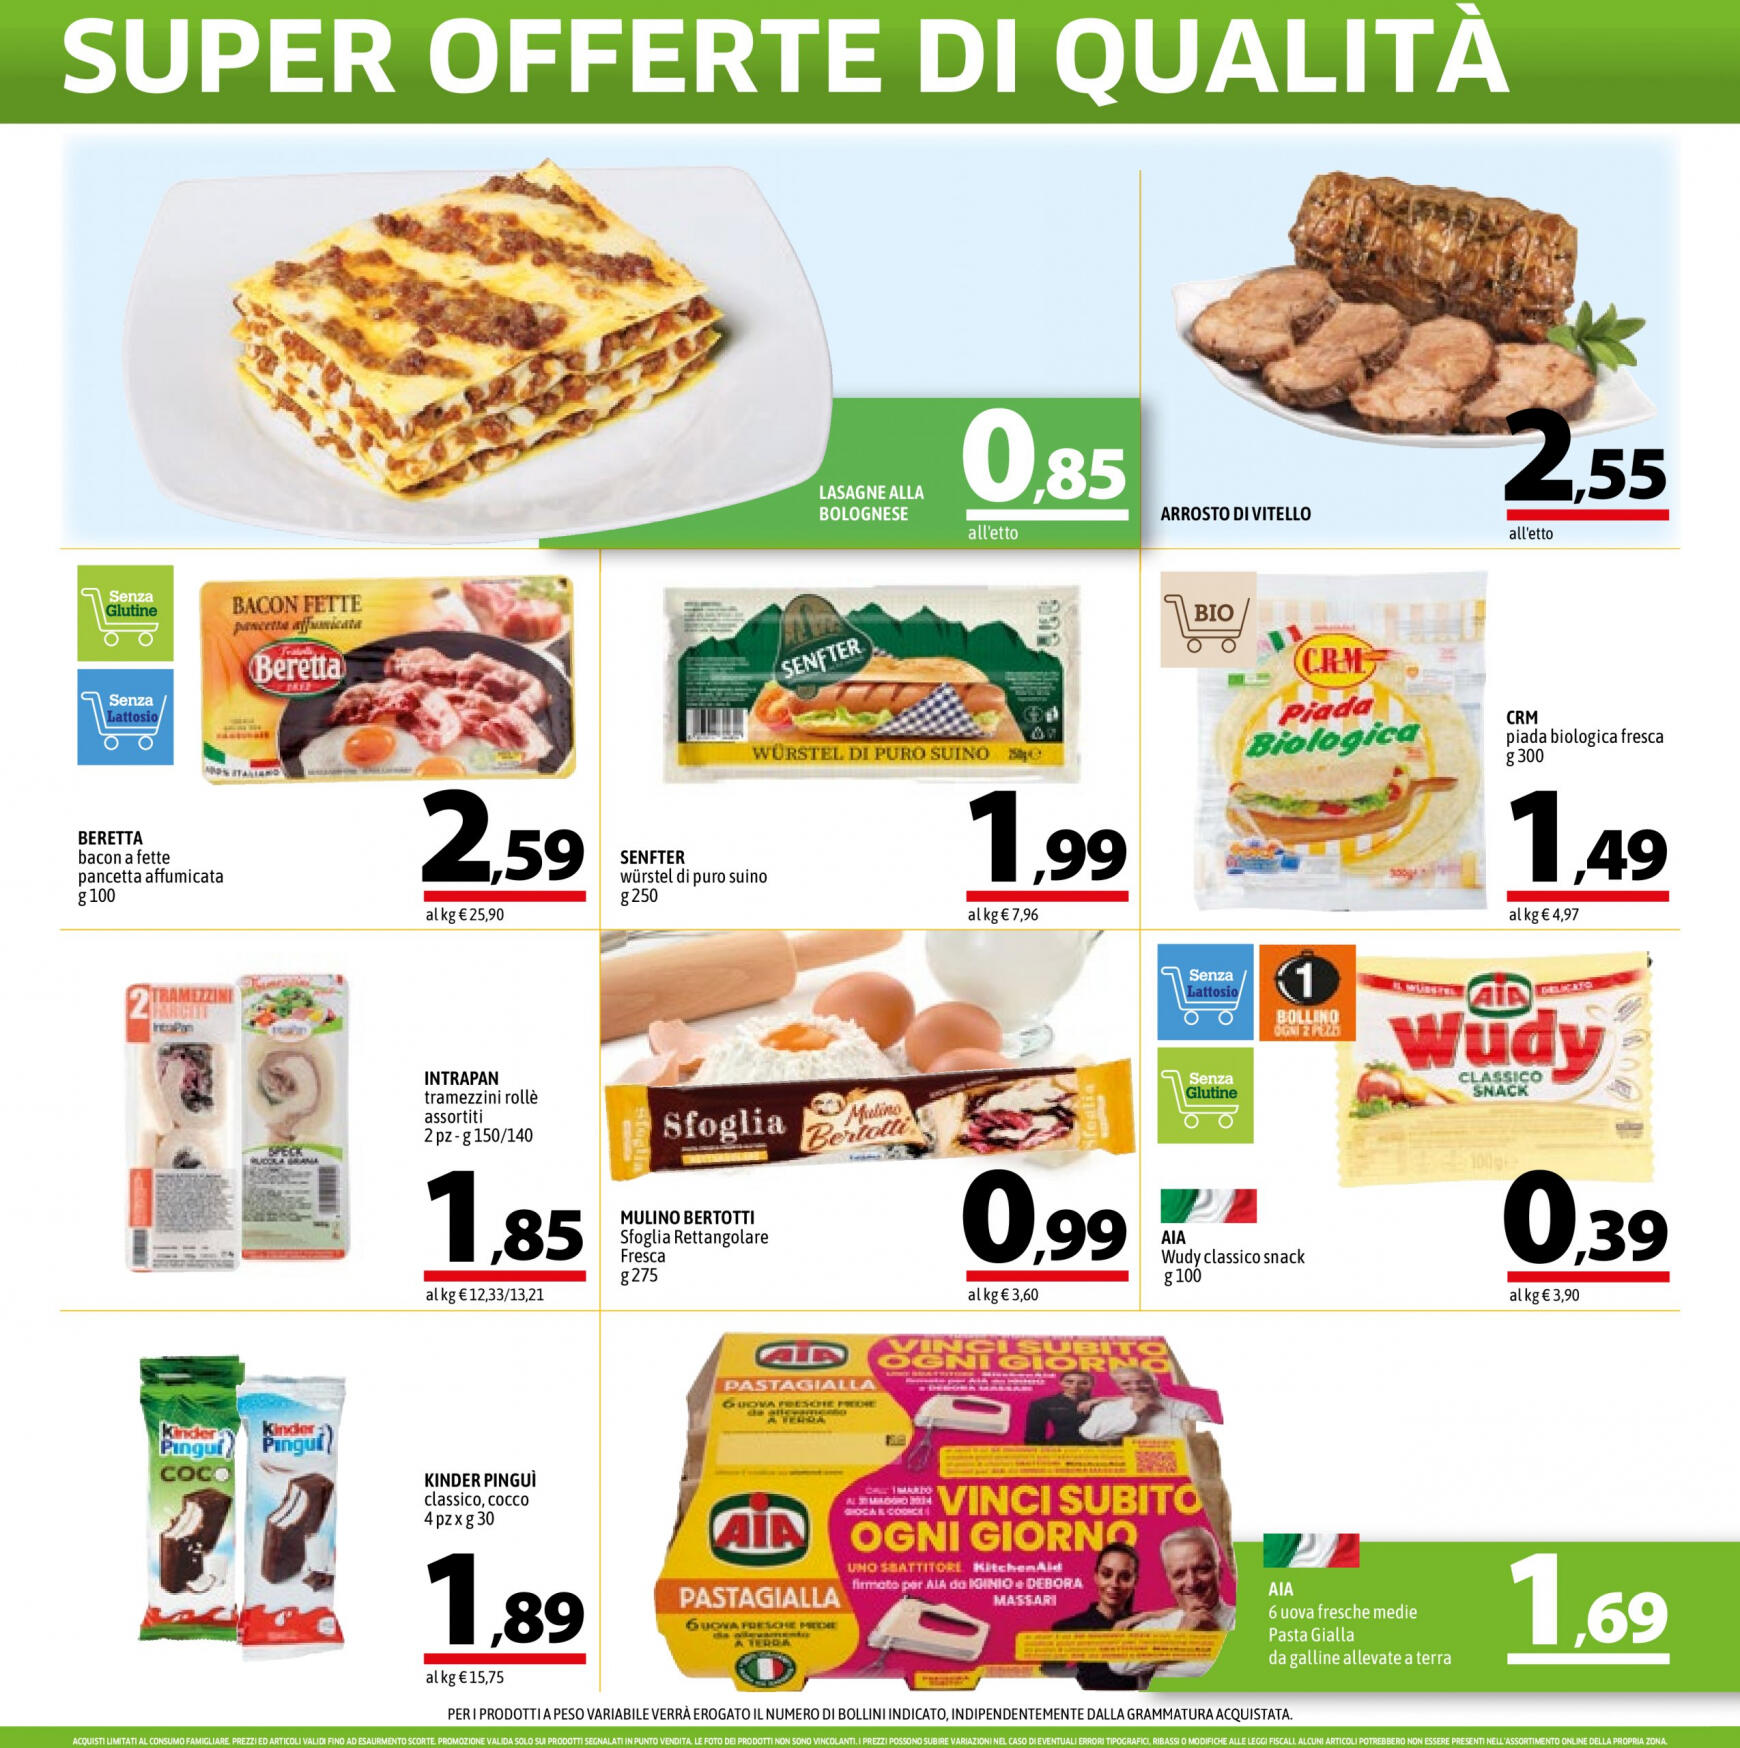 a-o - Nuovo volantino A&O - Super Offerte Di Qualita' 02.05. - 15.05. - page: 6